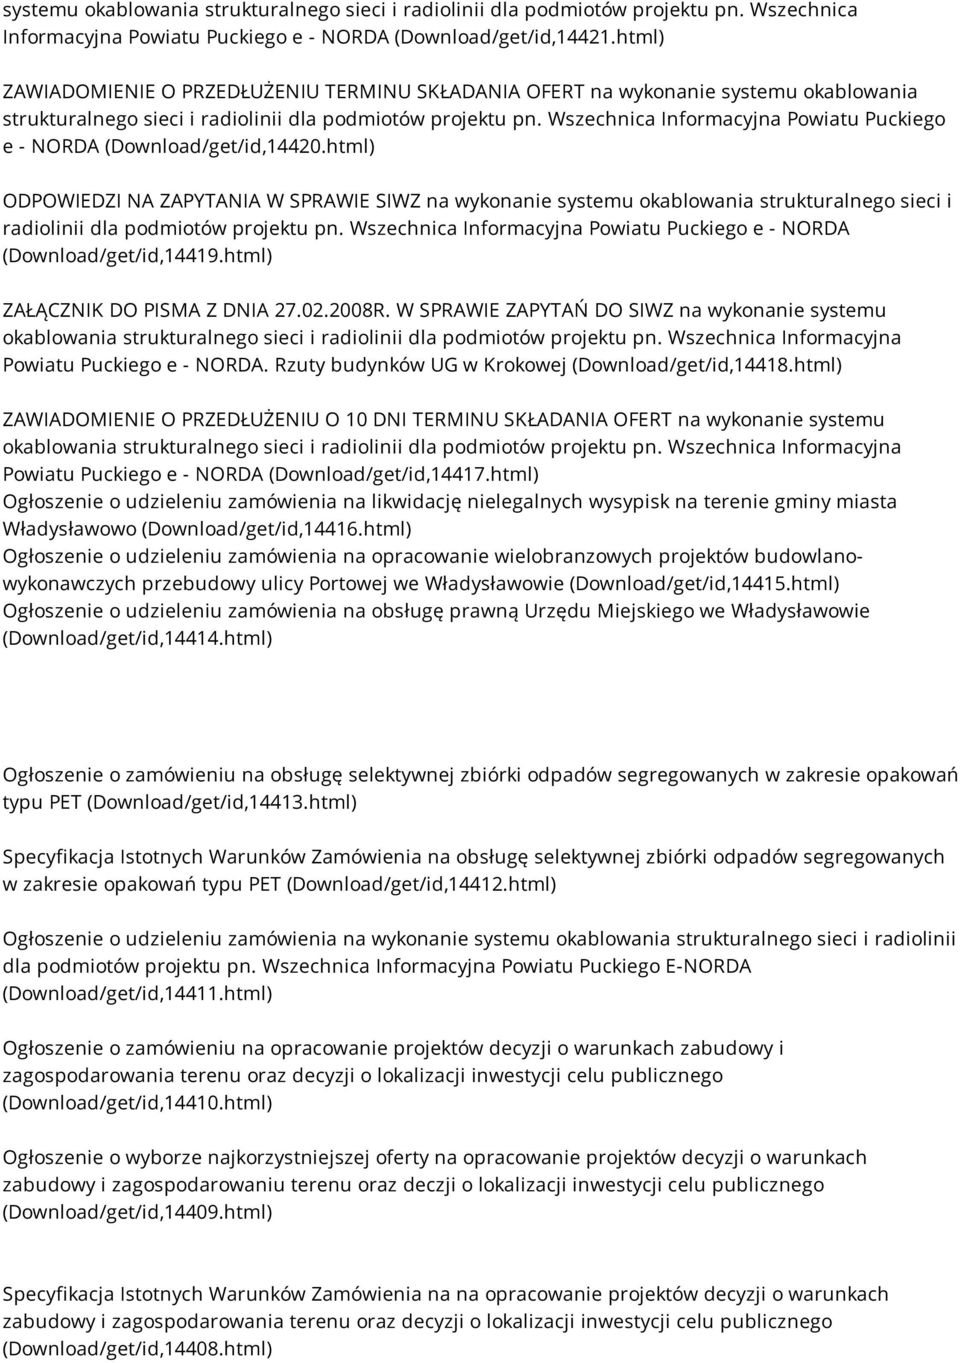 Wszechnica Informacyjna Powiatu Puckiego e - NORDA (Download/get/id,14420.